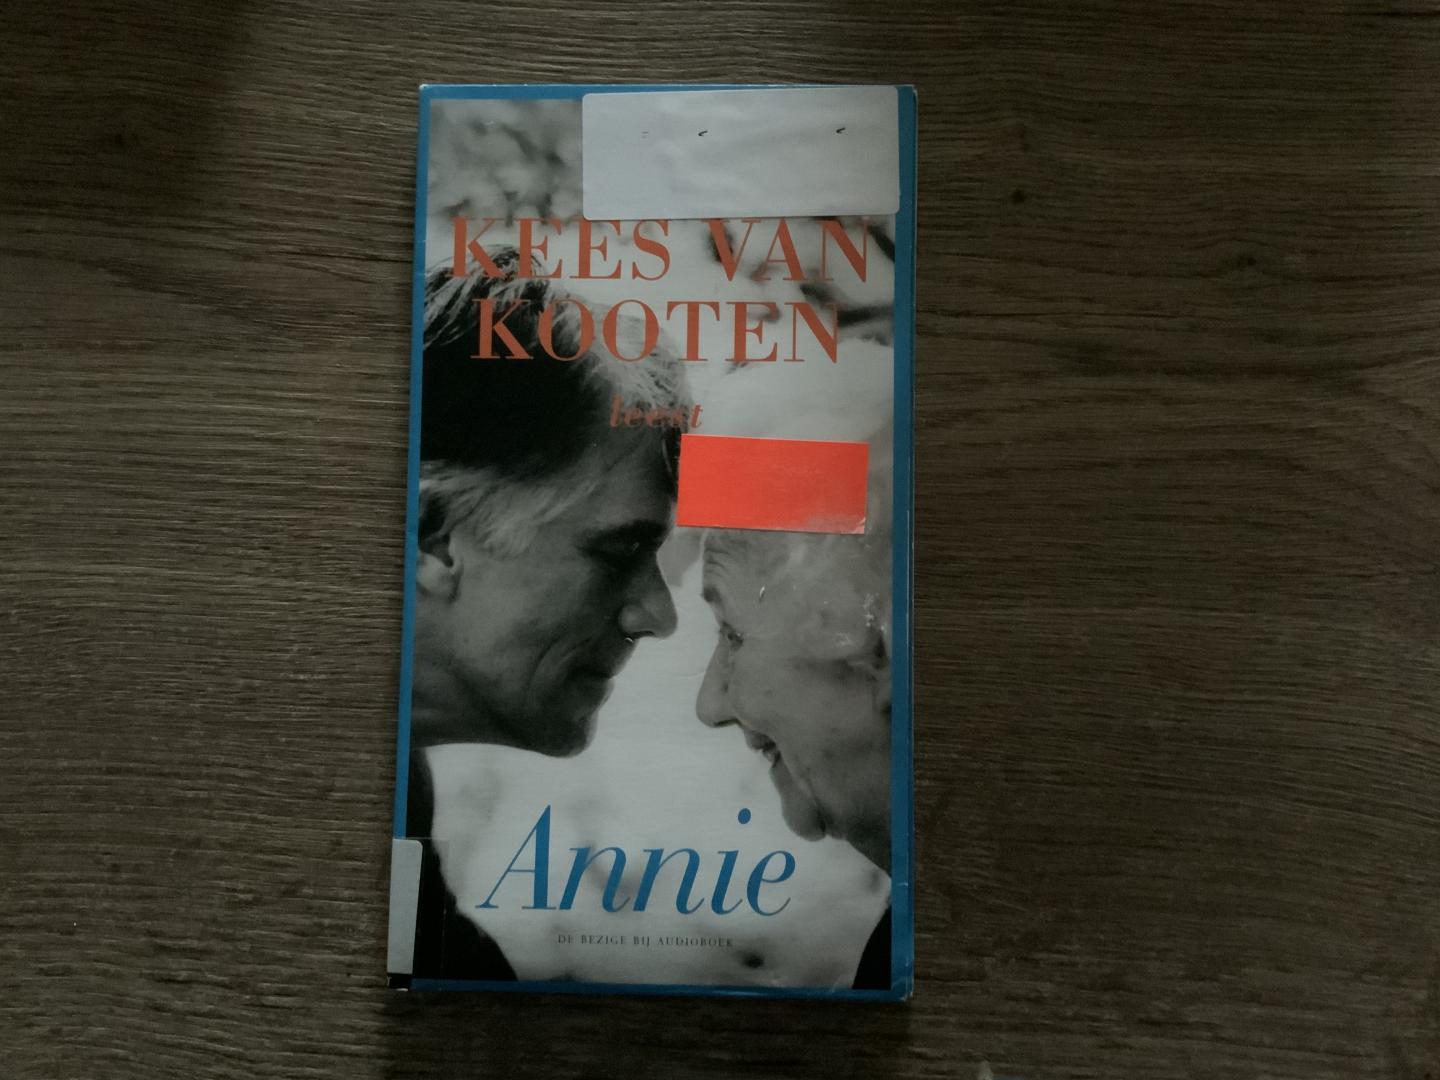 Kooten, Kees van - Annie